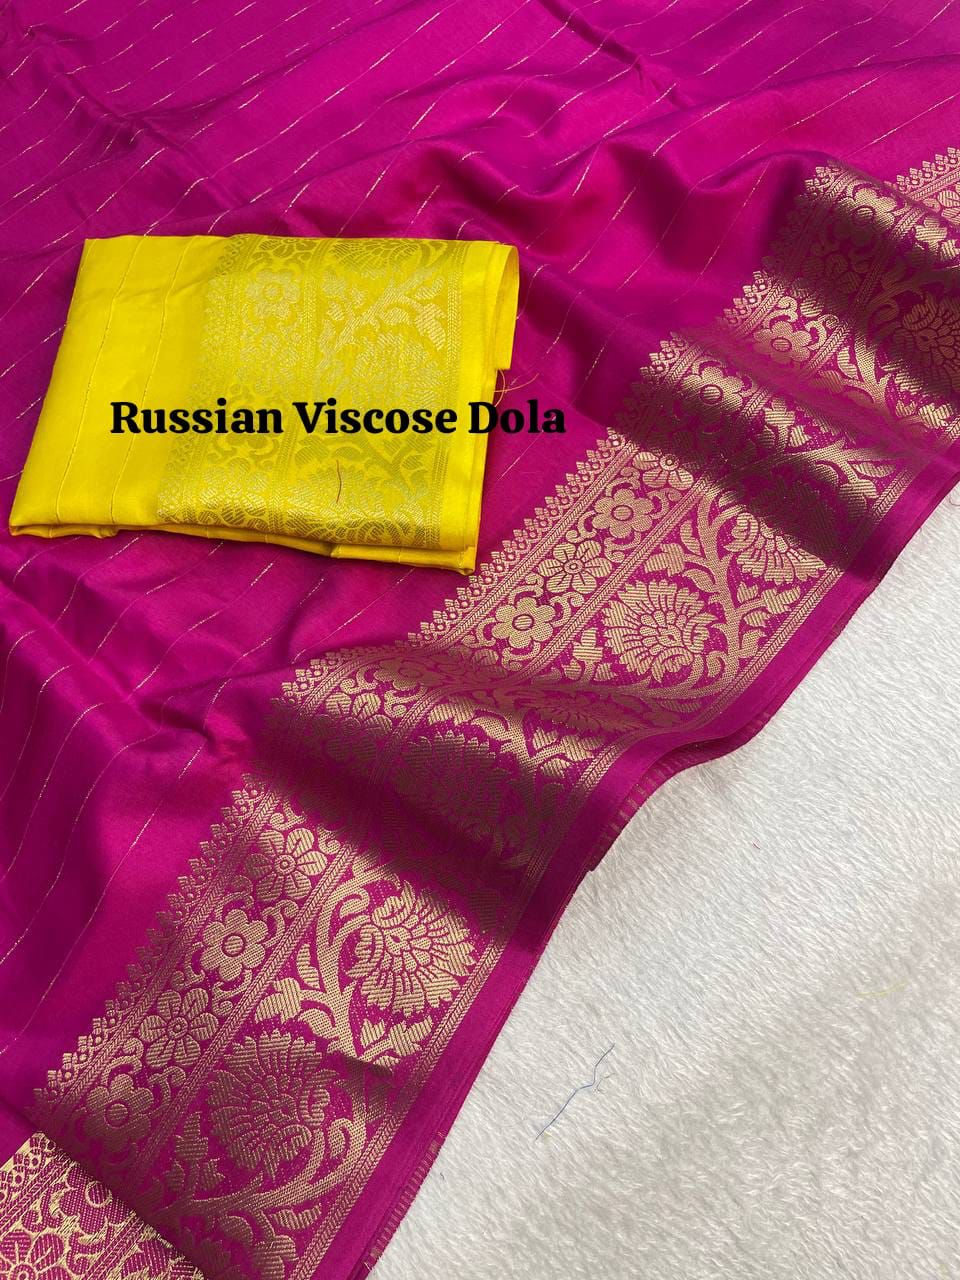 Pure Pink Viscose Russian Dola Saree With Pallu And Jacquard Border